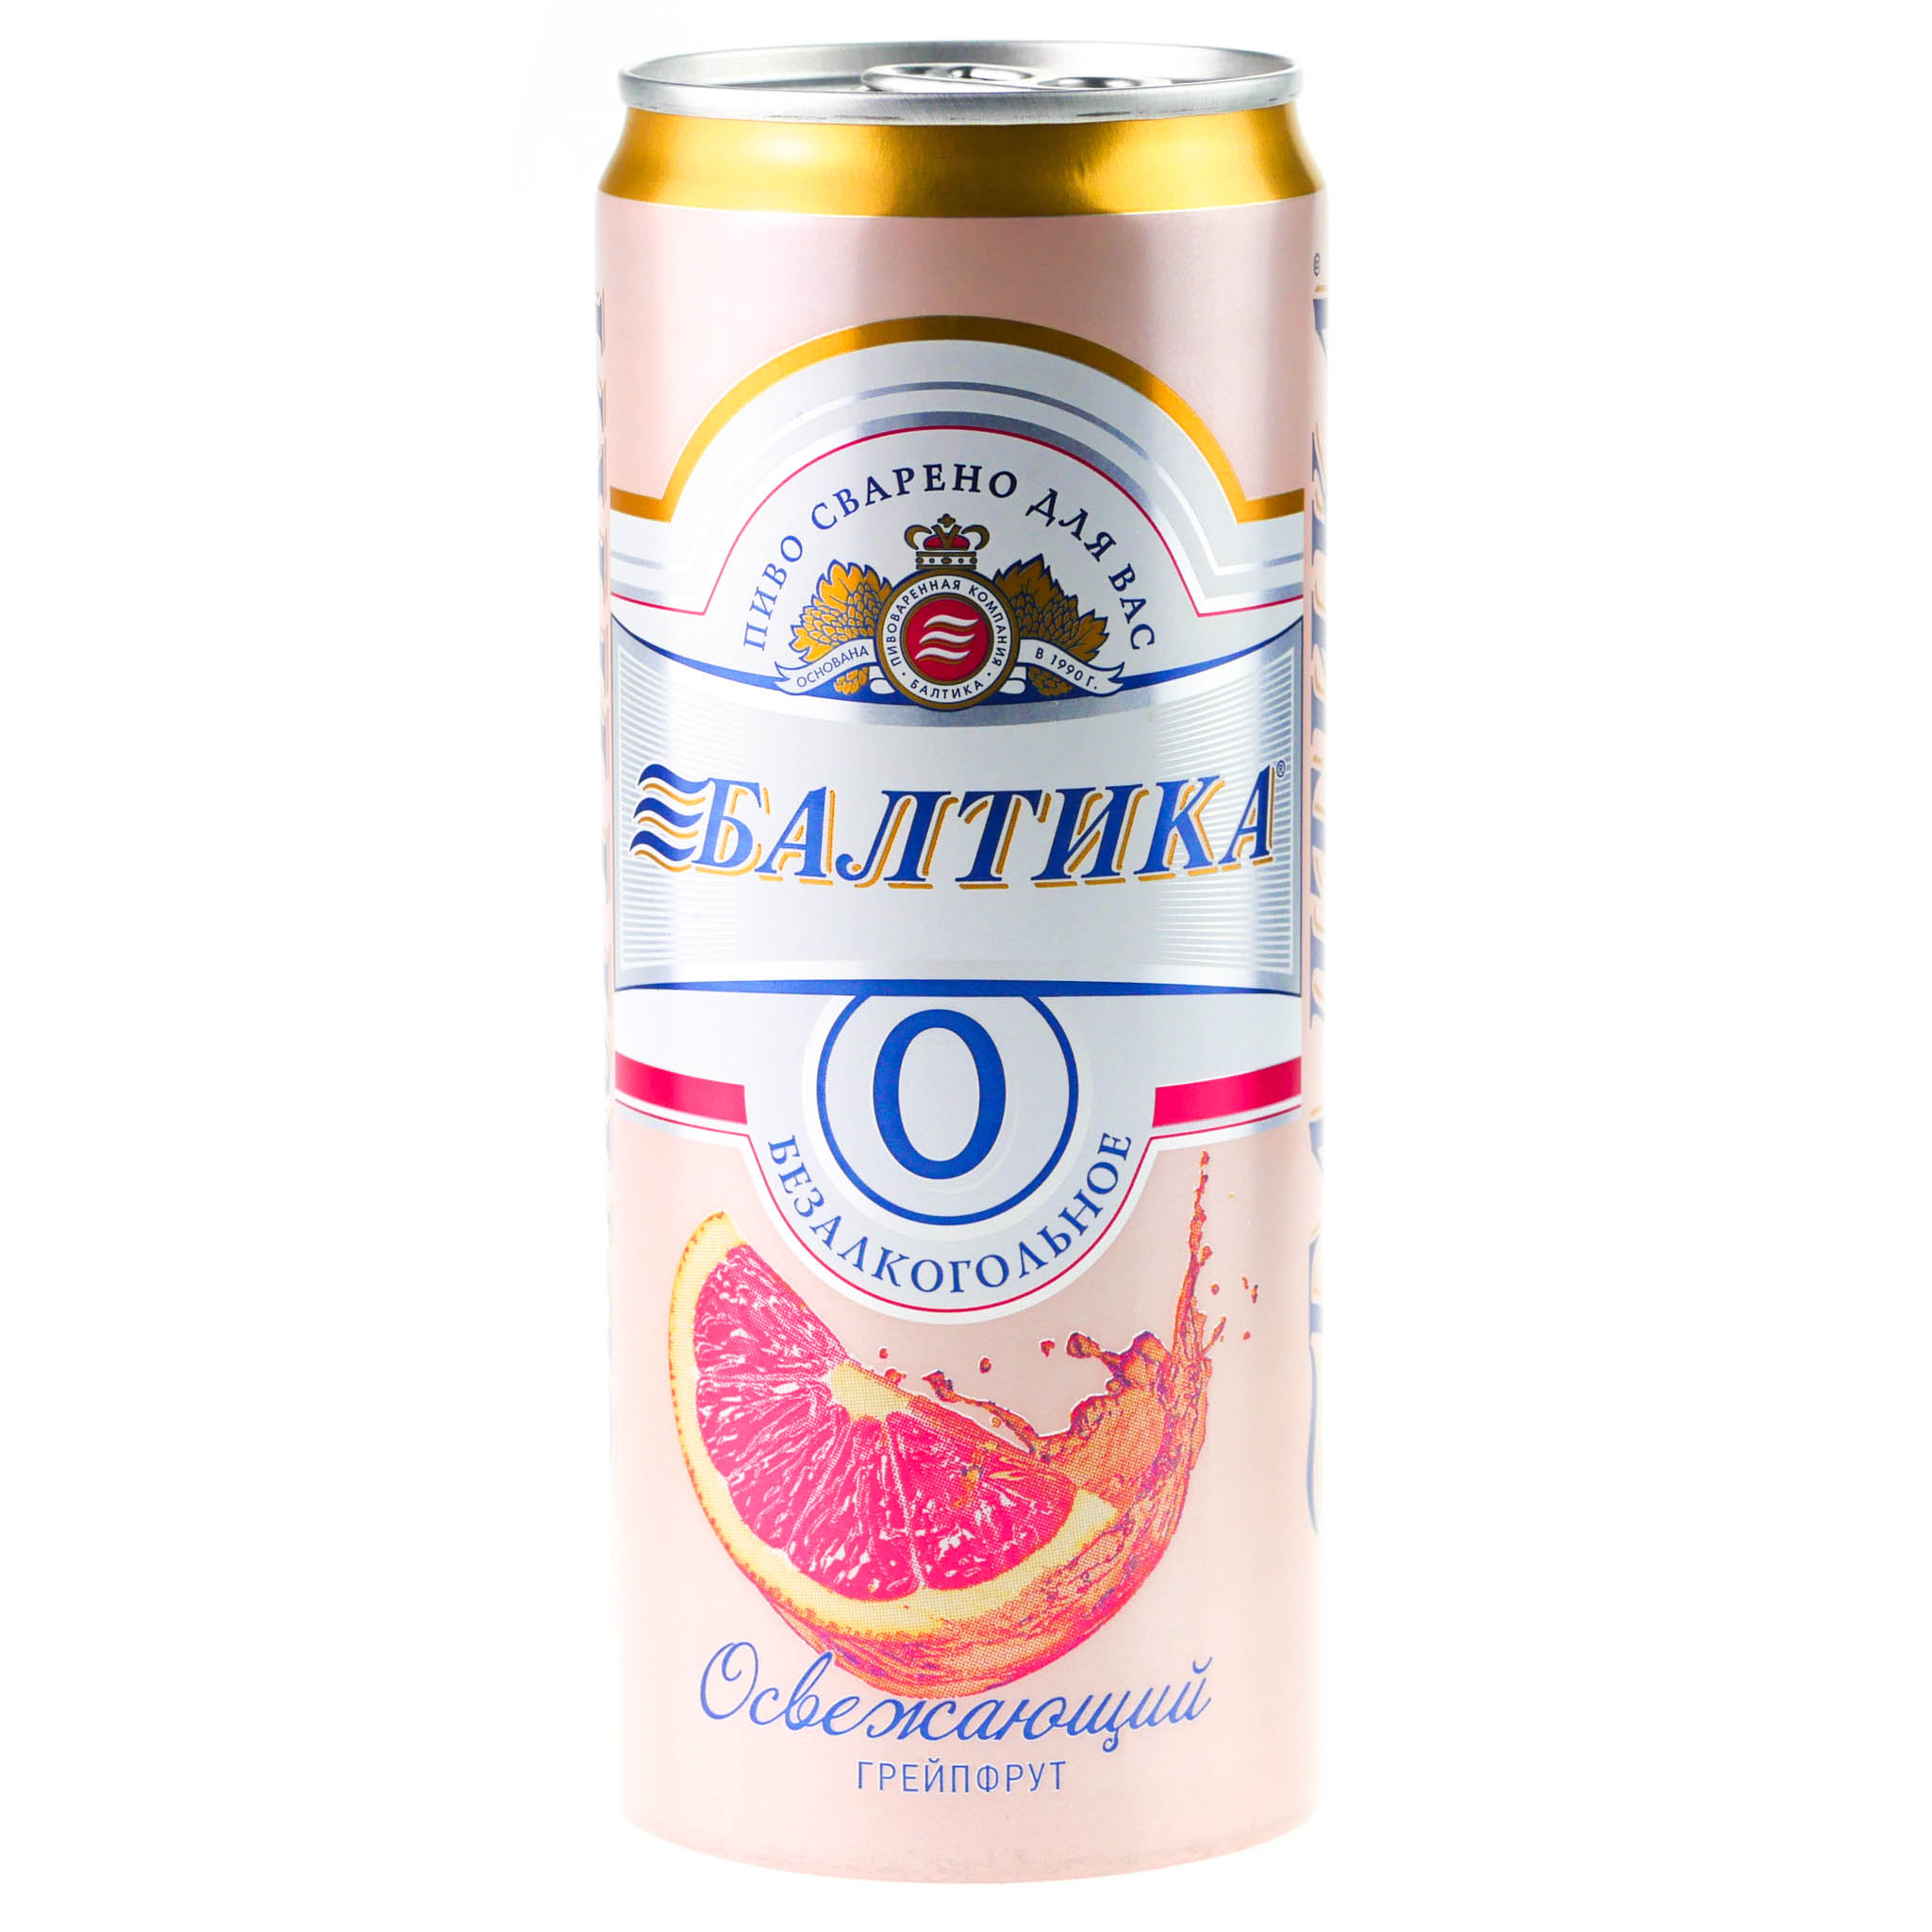 Безалкогольная пивоварня. Пиво Балтика 0 безалкогольное грейпфрут. Пиво Балтика №0 безалкогольное грейпфрут 0,33л ж/б. Пиво Балтика 0 безалкогольное. Напиток пивной Балтика 0.33л грейпфр.